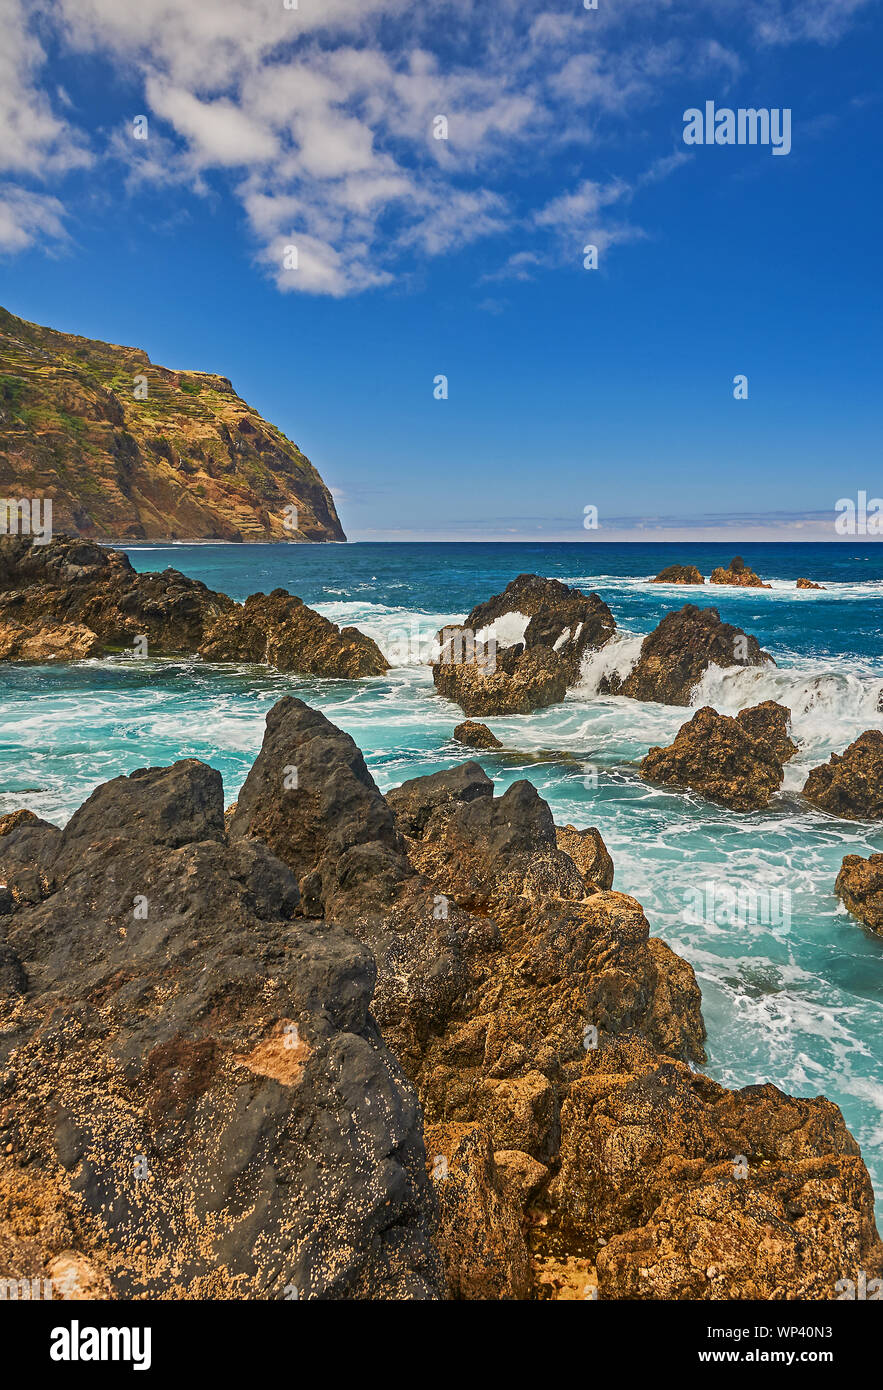 Océano Atlántico y escarpado litoral volcánico del norte de Madeira en Porto Moniz, con olas rompiendo sobre las rocas y la costa. Foto de stock